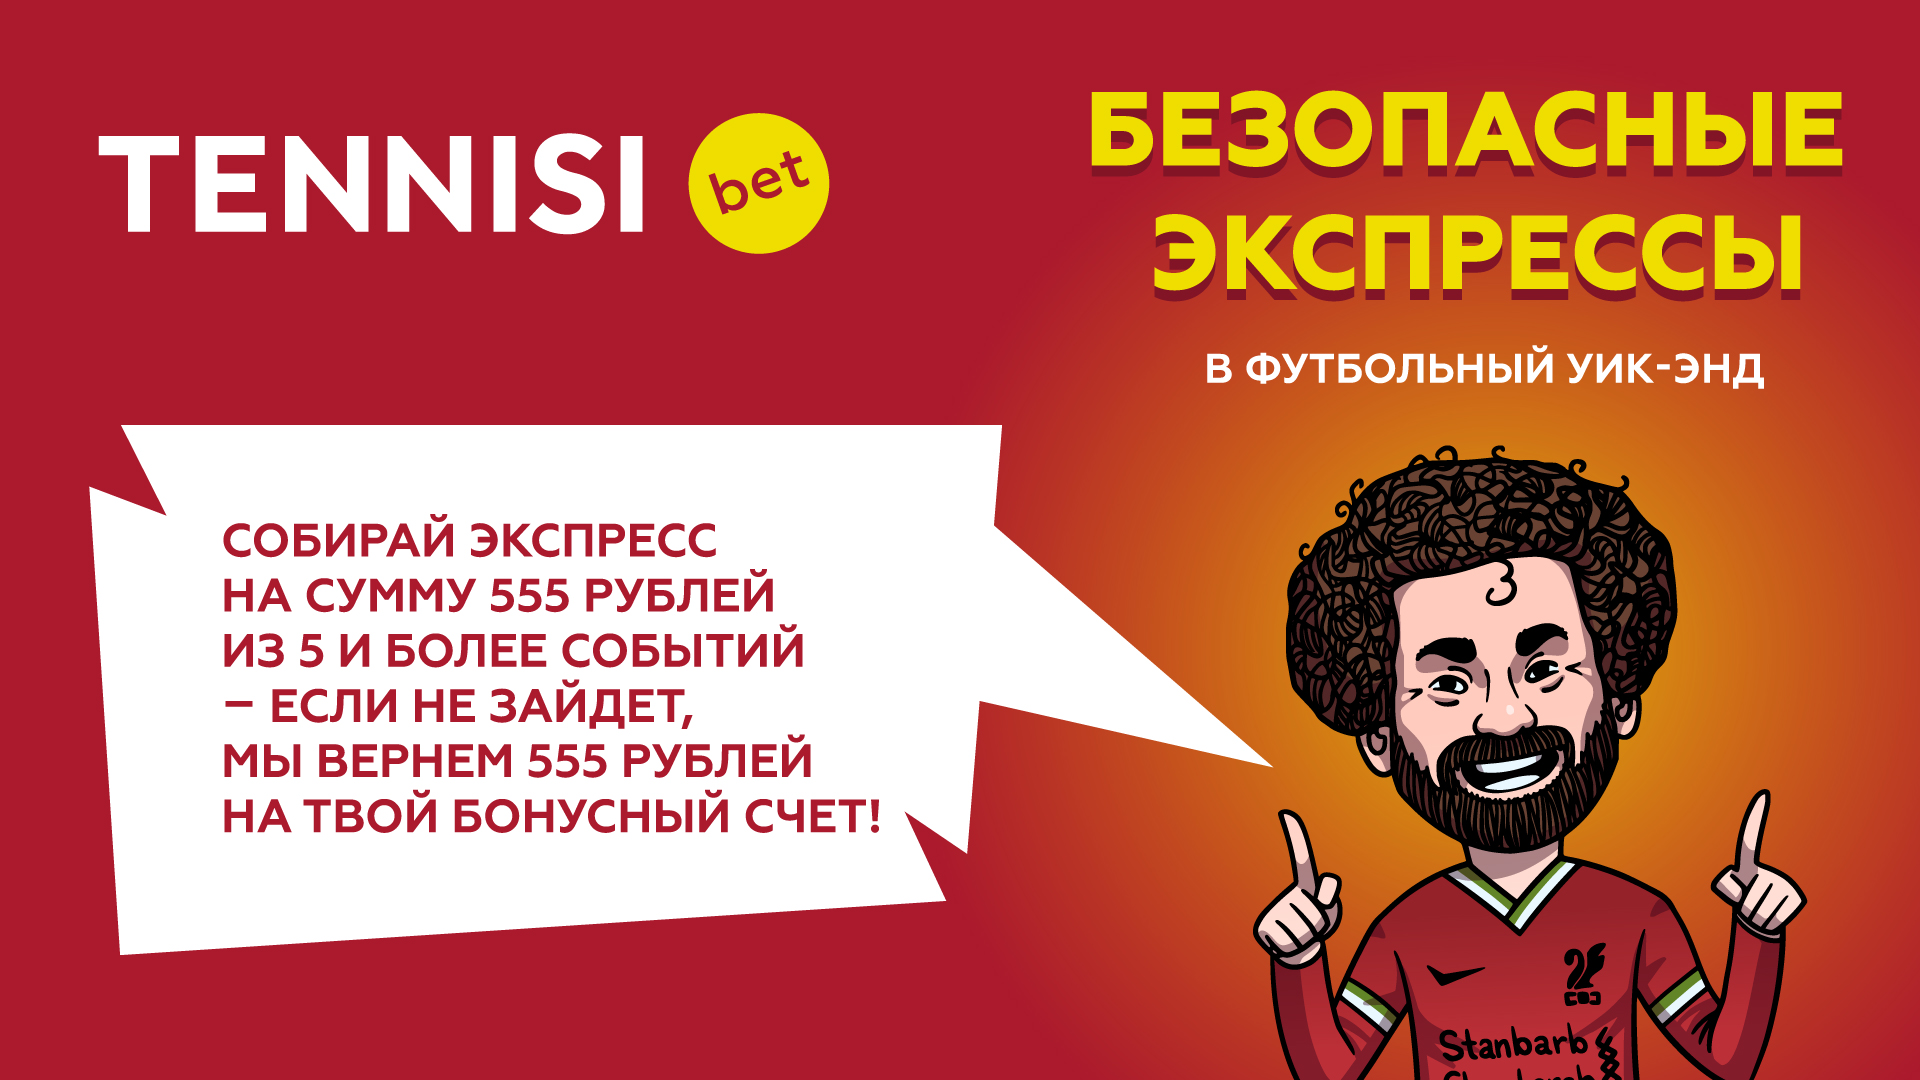 Ставь без риска TENNISI bet: если экспресс на 555 рублей не доедет, то деньги вернутся на счет!